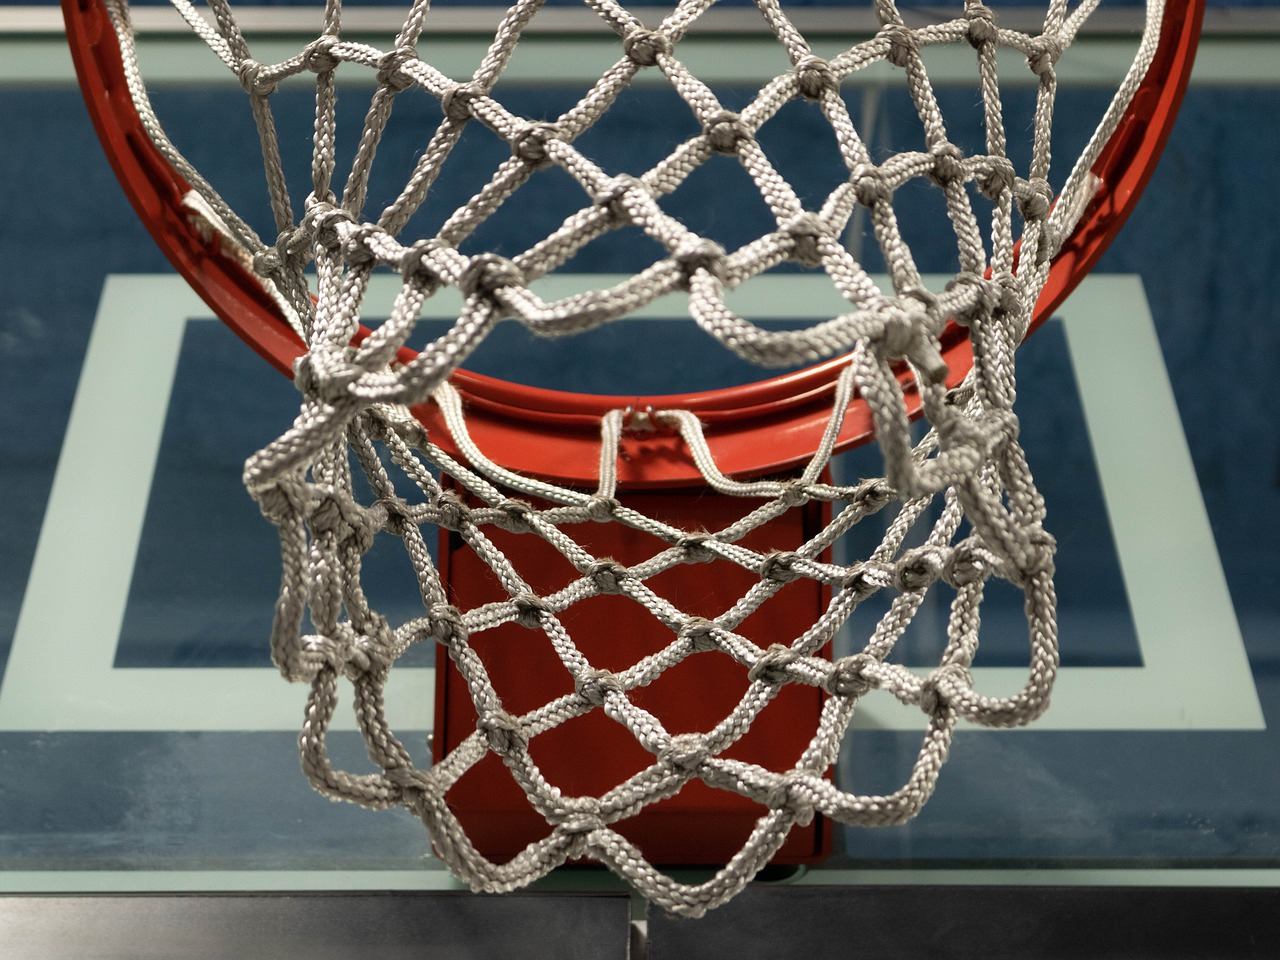 close-up shot of a basketball net hoop